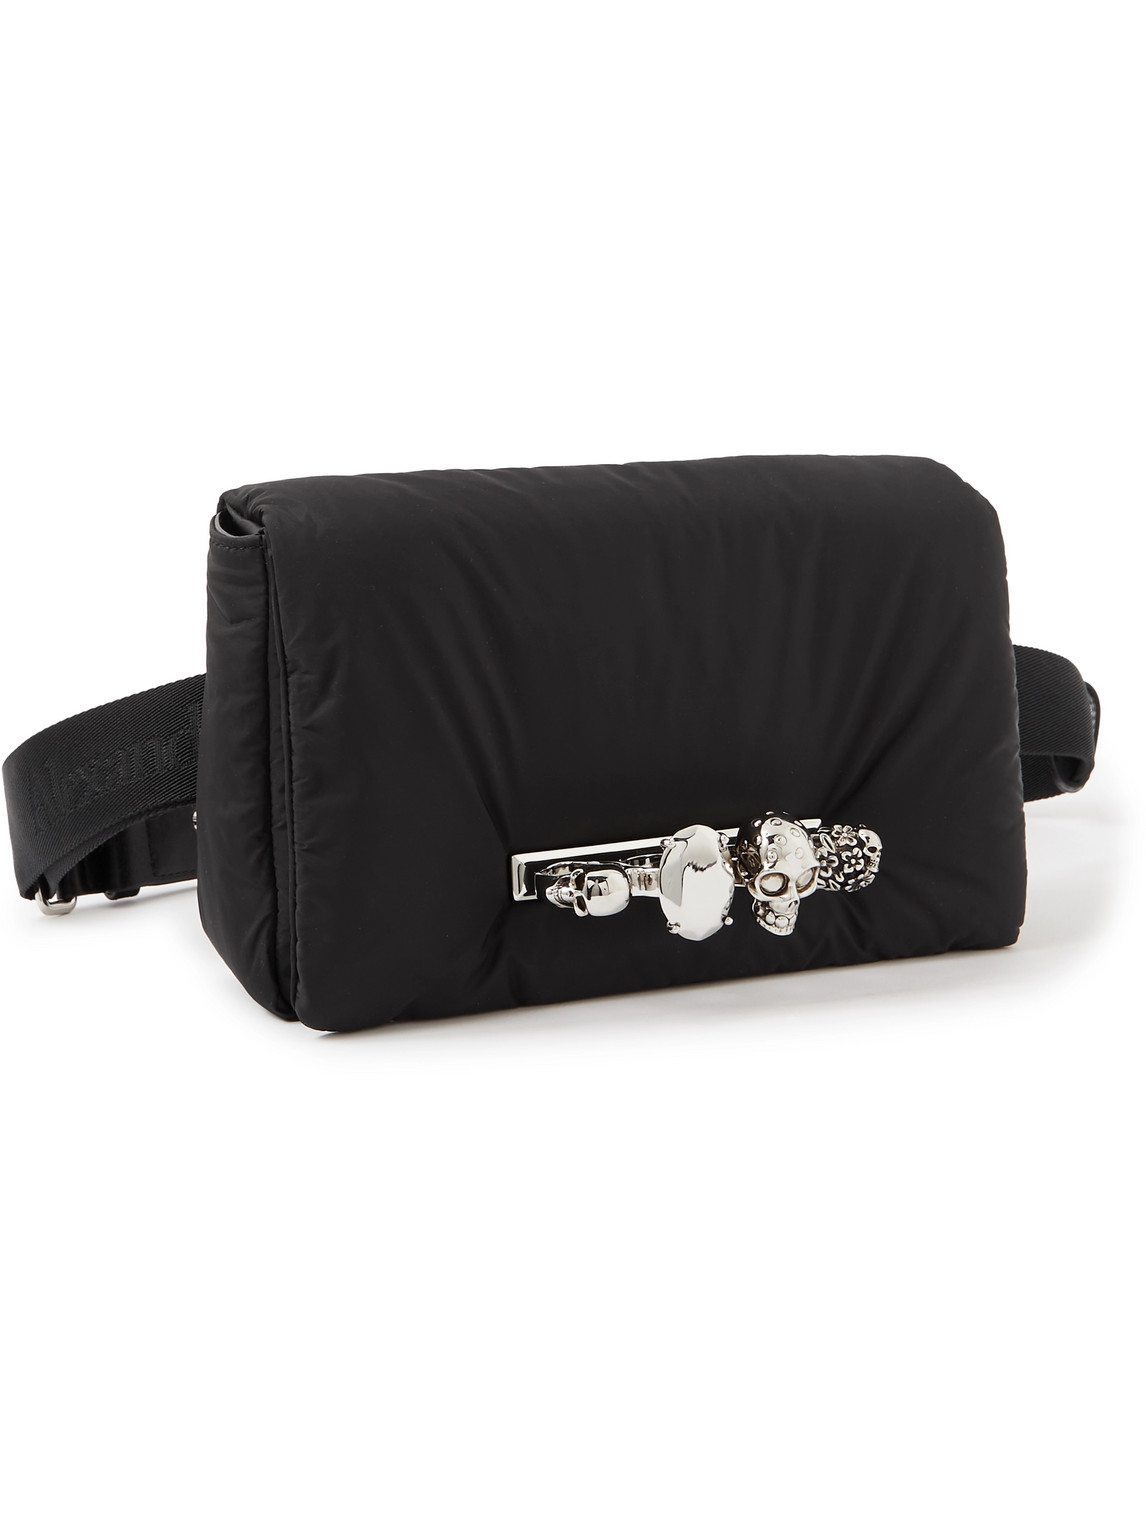 The Knuckle Embellished Leather-Trimmed Shell Messenger Bag